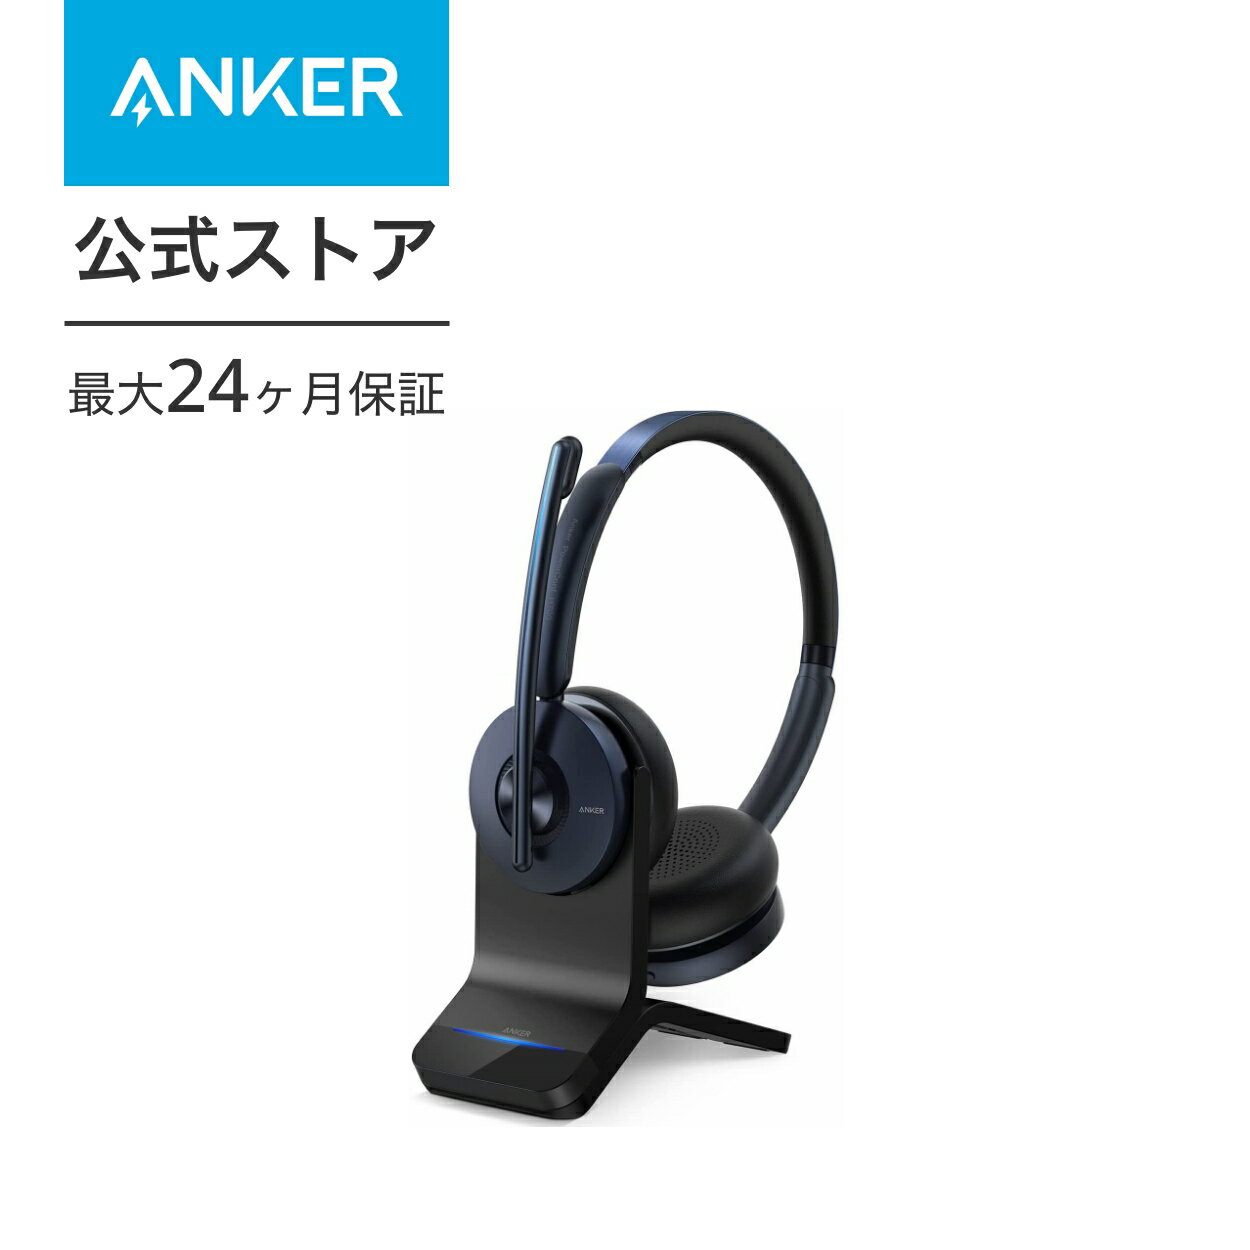 【あす楽対応】Anker PowerConf H700 ワイヤレスヘッドセット Bluetooth 5.0 充電スタンド付属【パソコン用 / Web会議 / 通話ノイズリダクション / マイク搭載 / アクティブノイズキャンセリン…